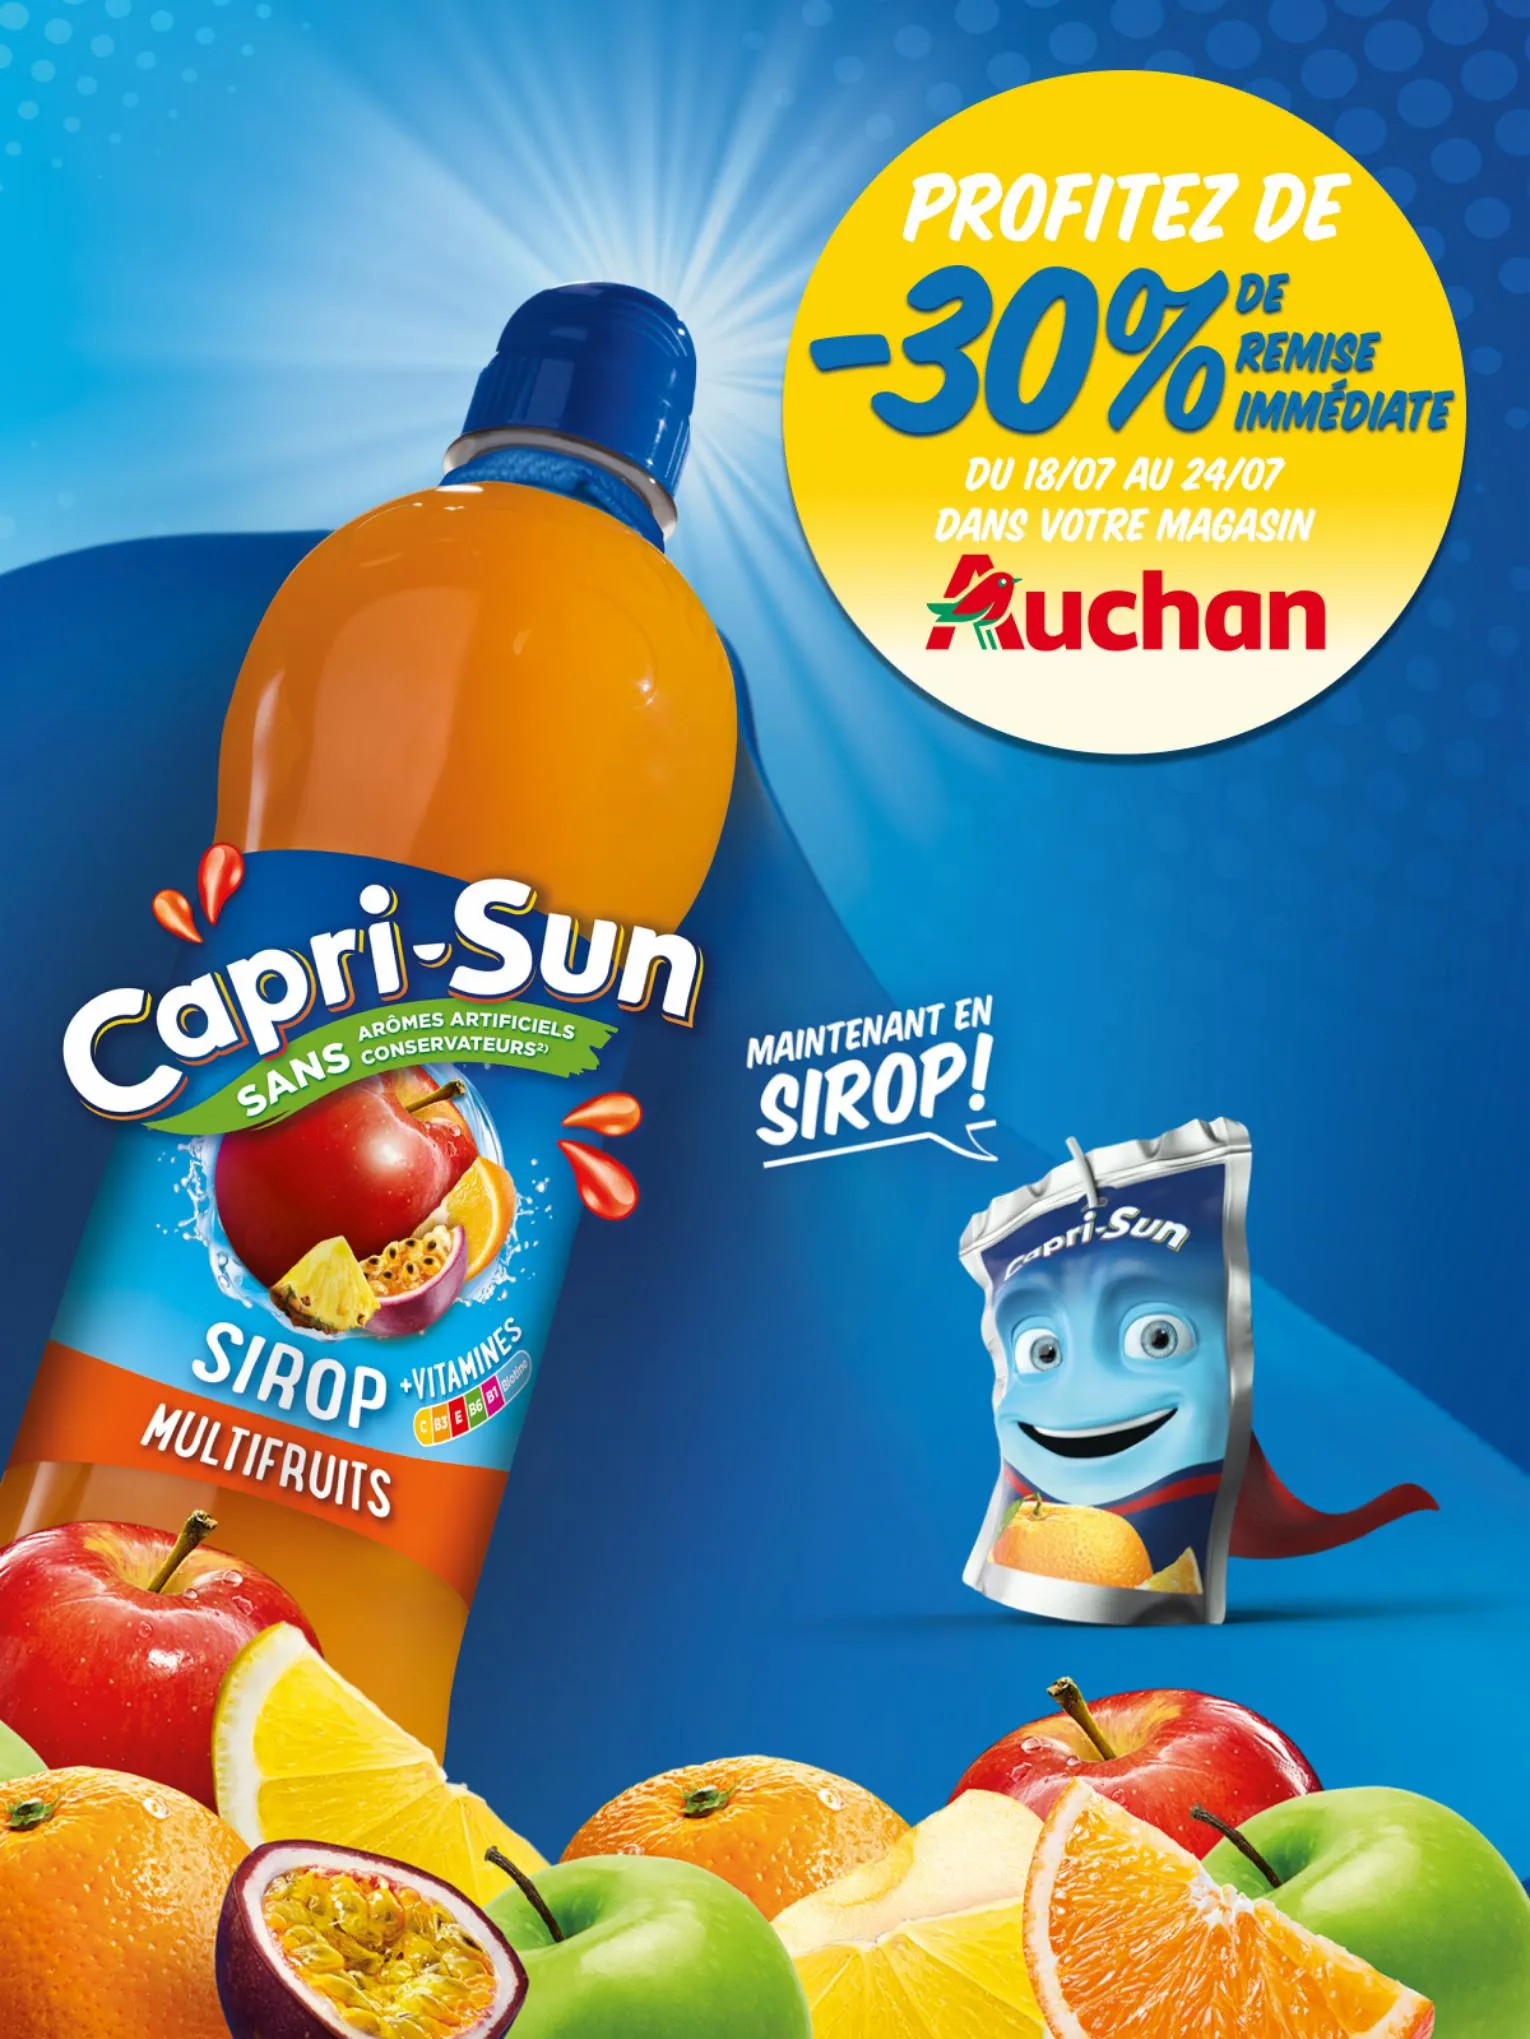 Catalogue Capri-Sun :-30% de remise immédiate dans votre magasin Auchan, page 00001